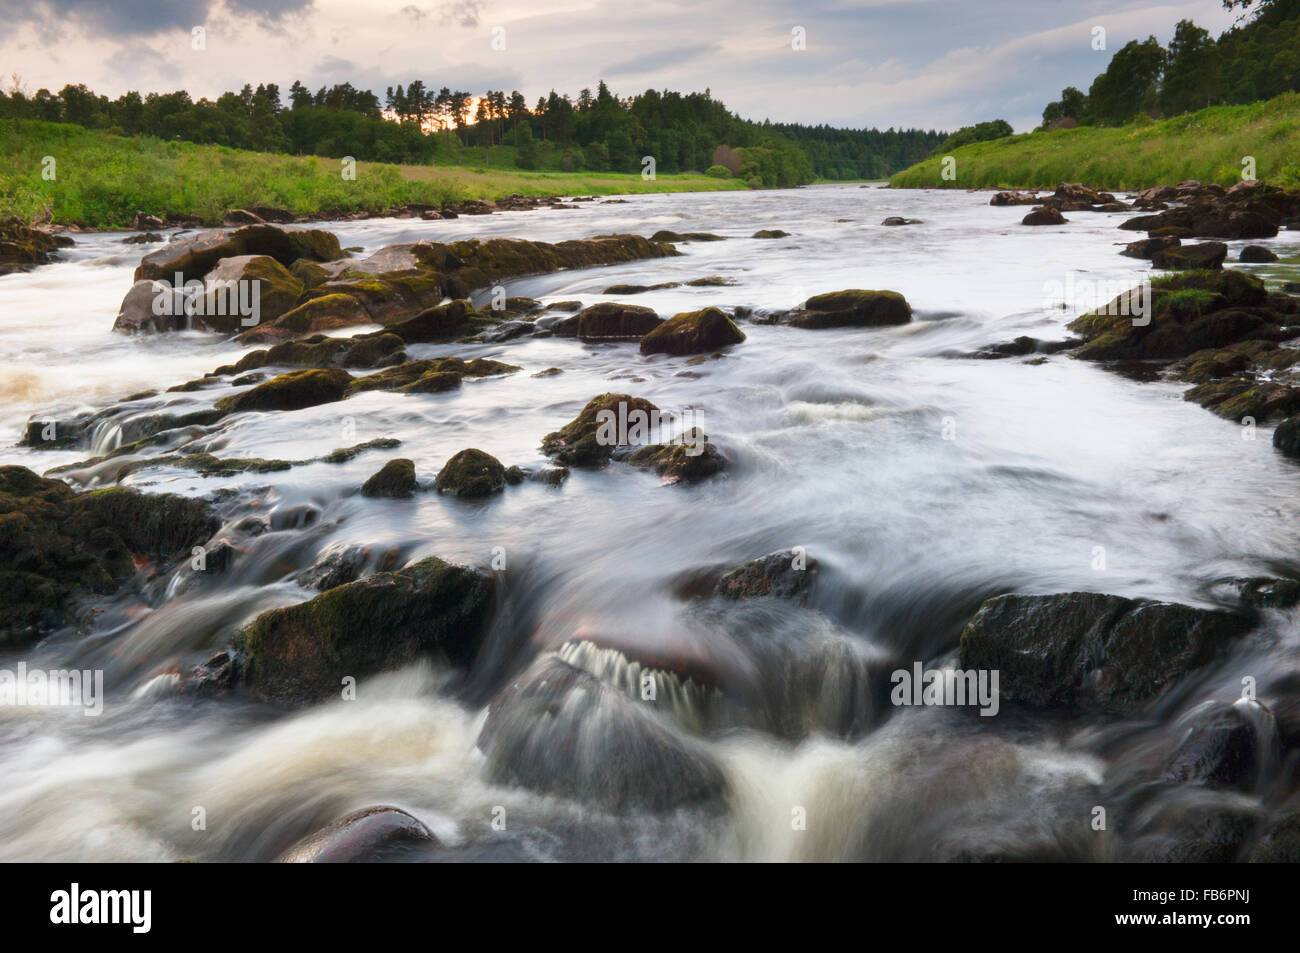 La rivière Dee près de Banchory, Aberdeenshire, Ecosse. Banque D'Images